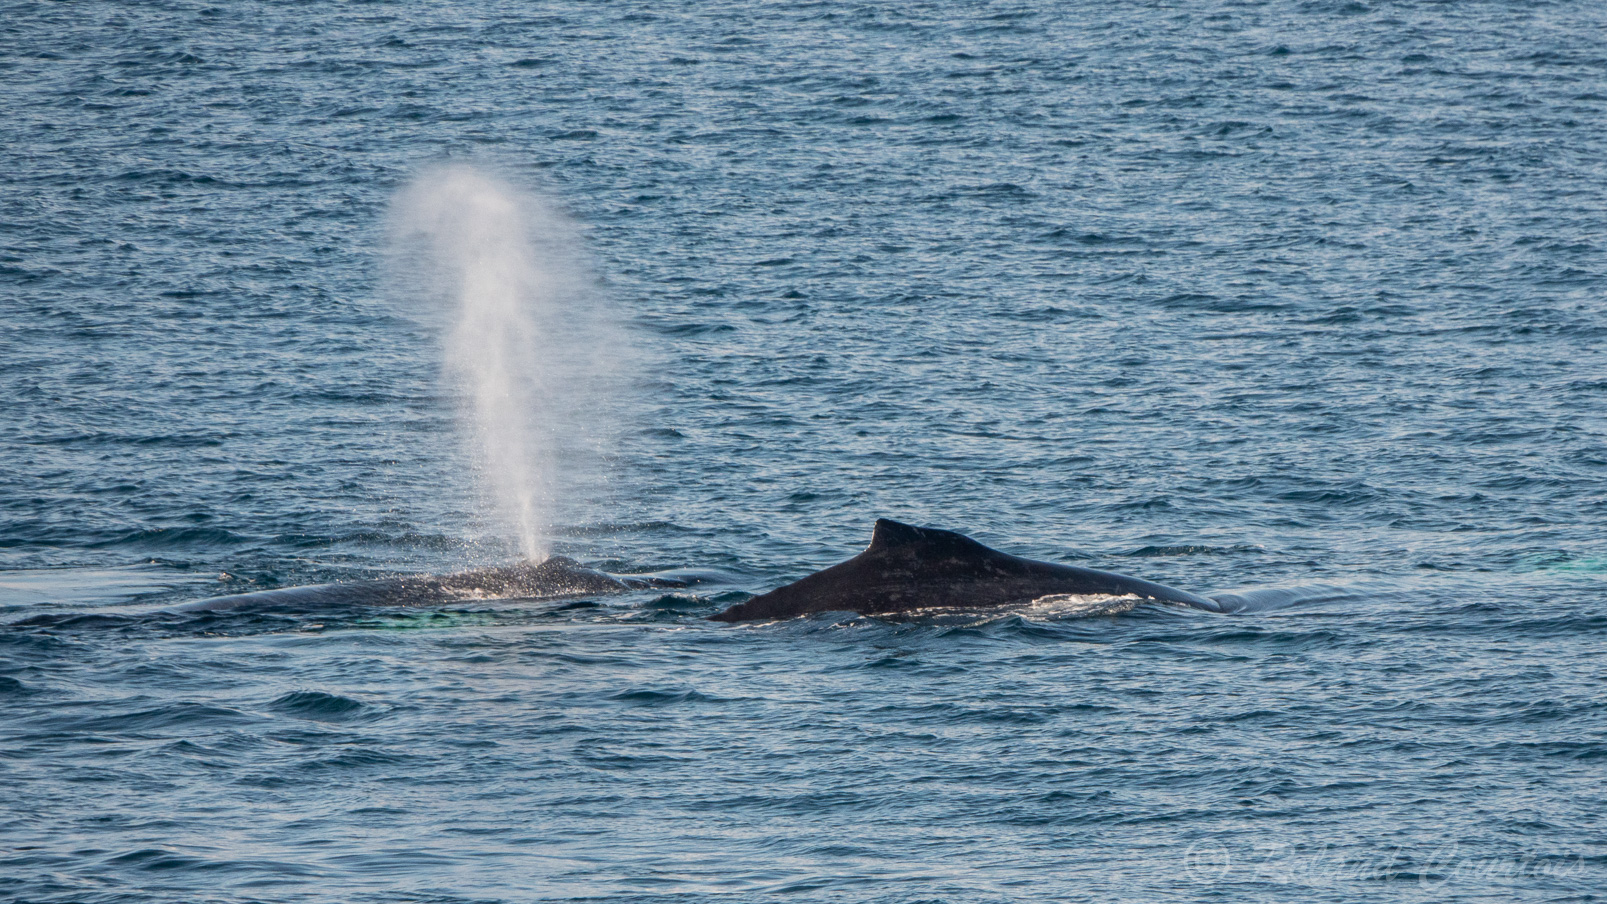 Ces baleines à bosse viennent jouer à proximité du navire.